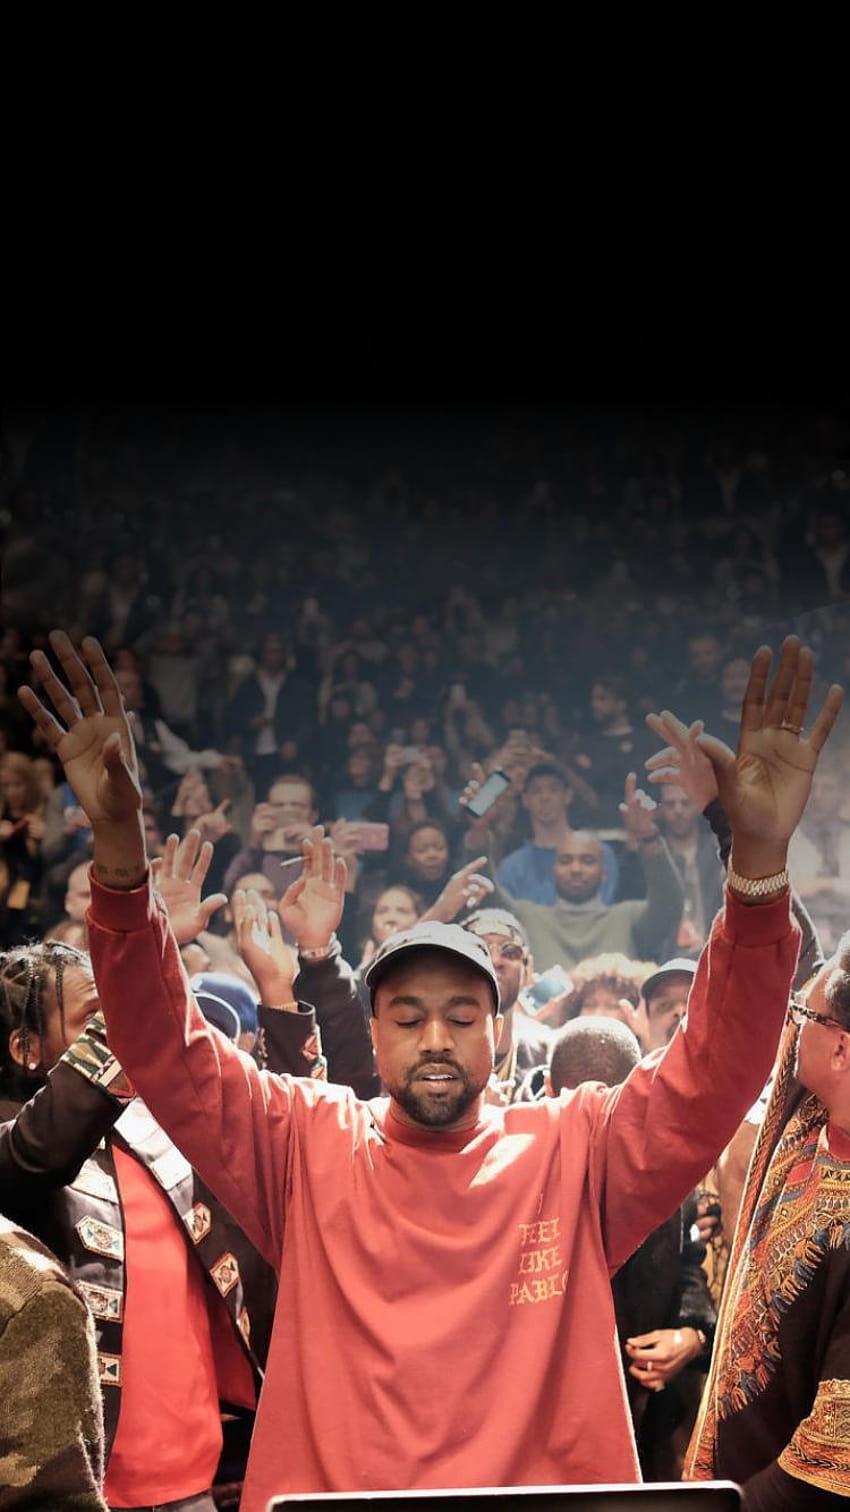 Terbaik : Kanye, kanye barat wallpaper ponsel HD